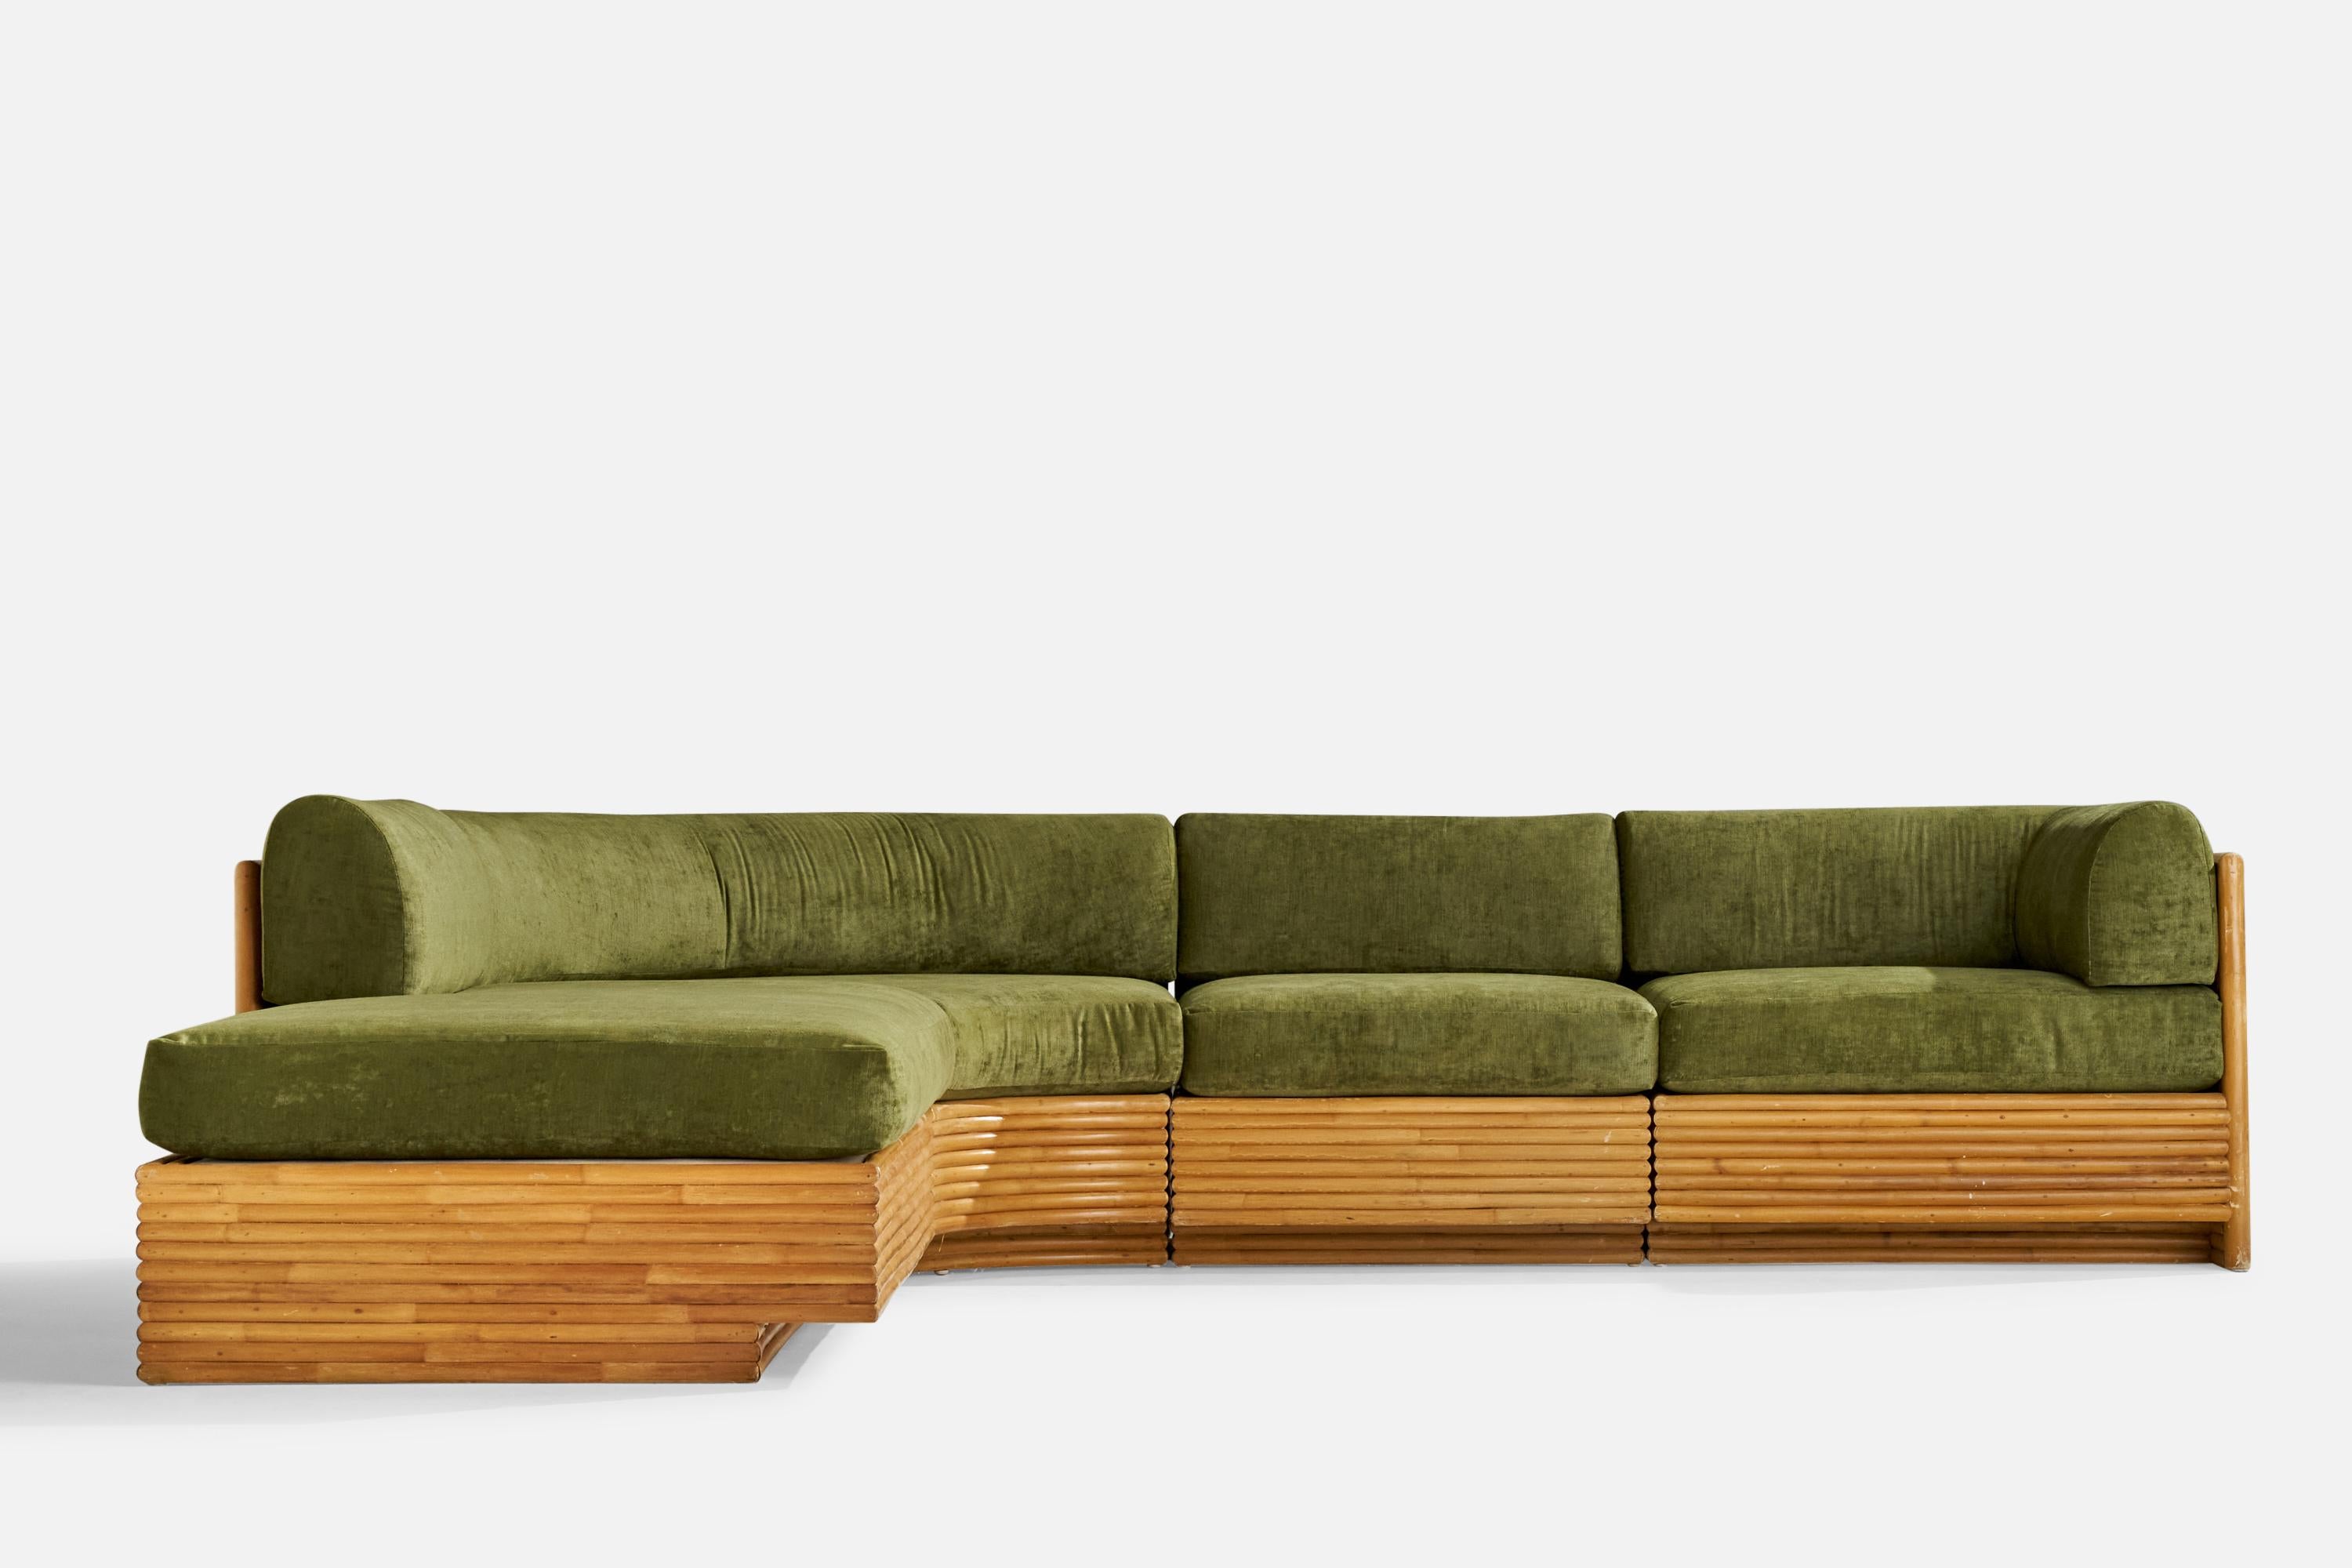 Directional Furniture, canapé sectionnel, bambou, velours, États-Unis, années 1970 2